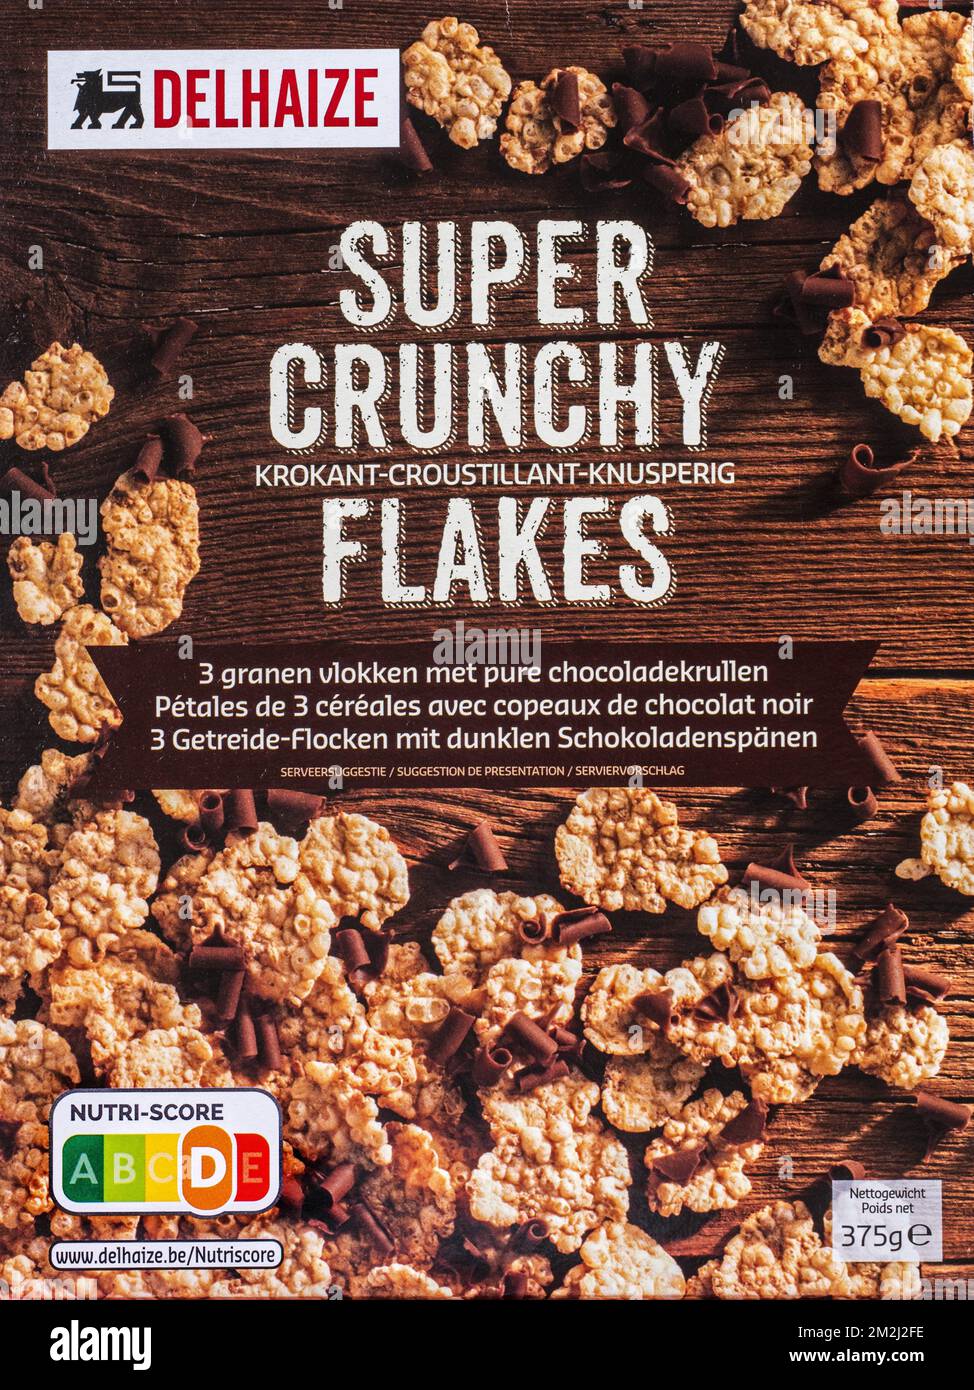 Nutritional label Nutri score on box of Belgian Delhaize Super Crunchy Flakes | Nutri-score, indicateur sur emballage alimentaire, appréciation de la qualité nutritionnelle du produit 23/08/2018 Stock Photo